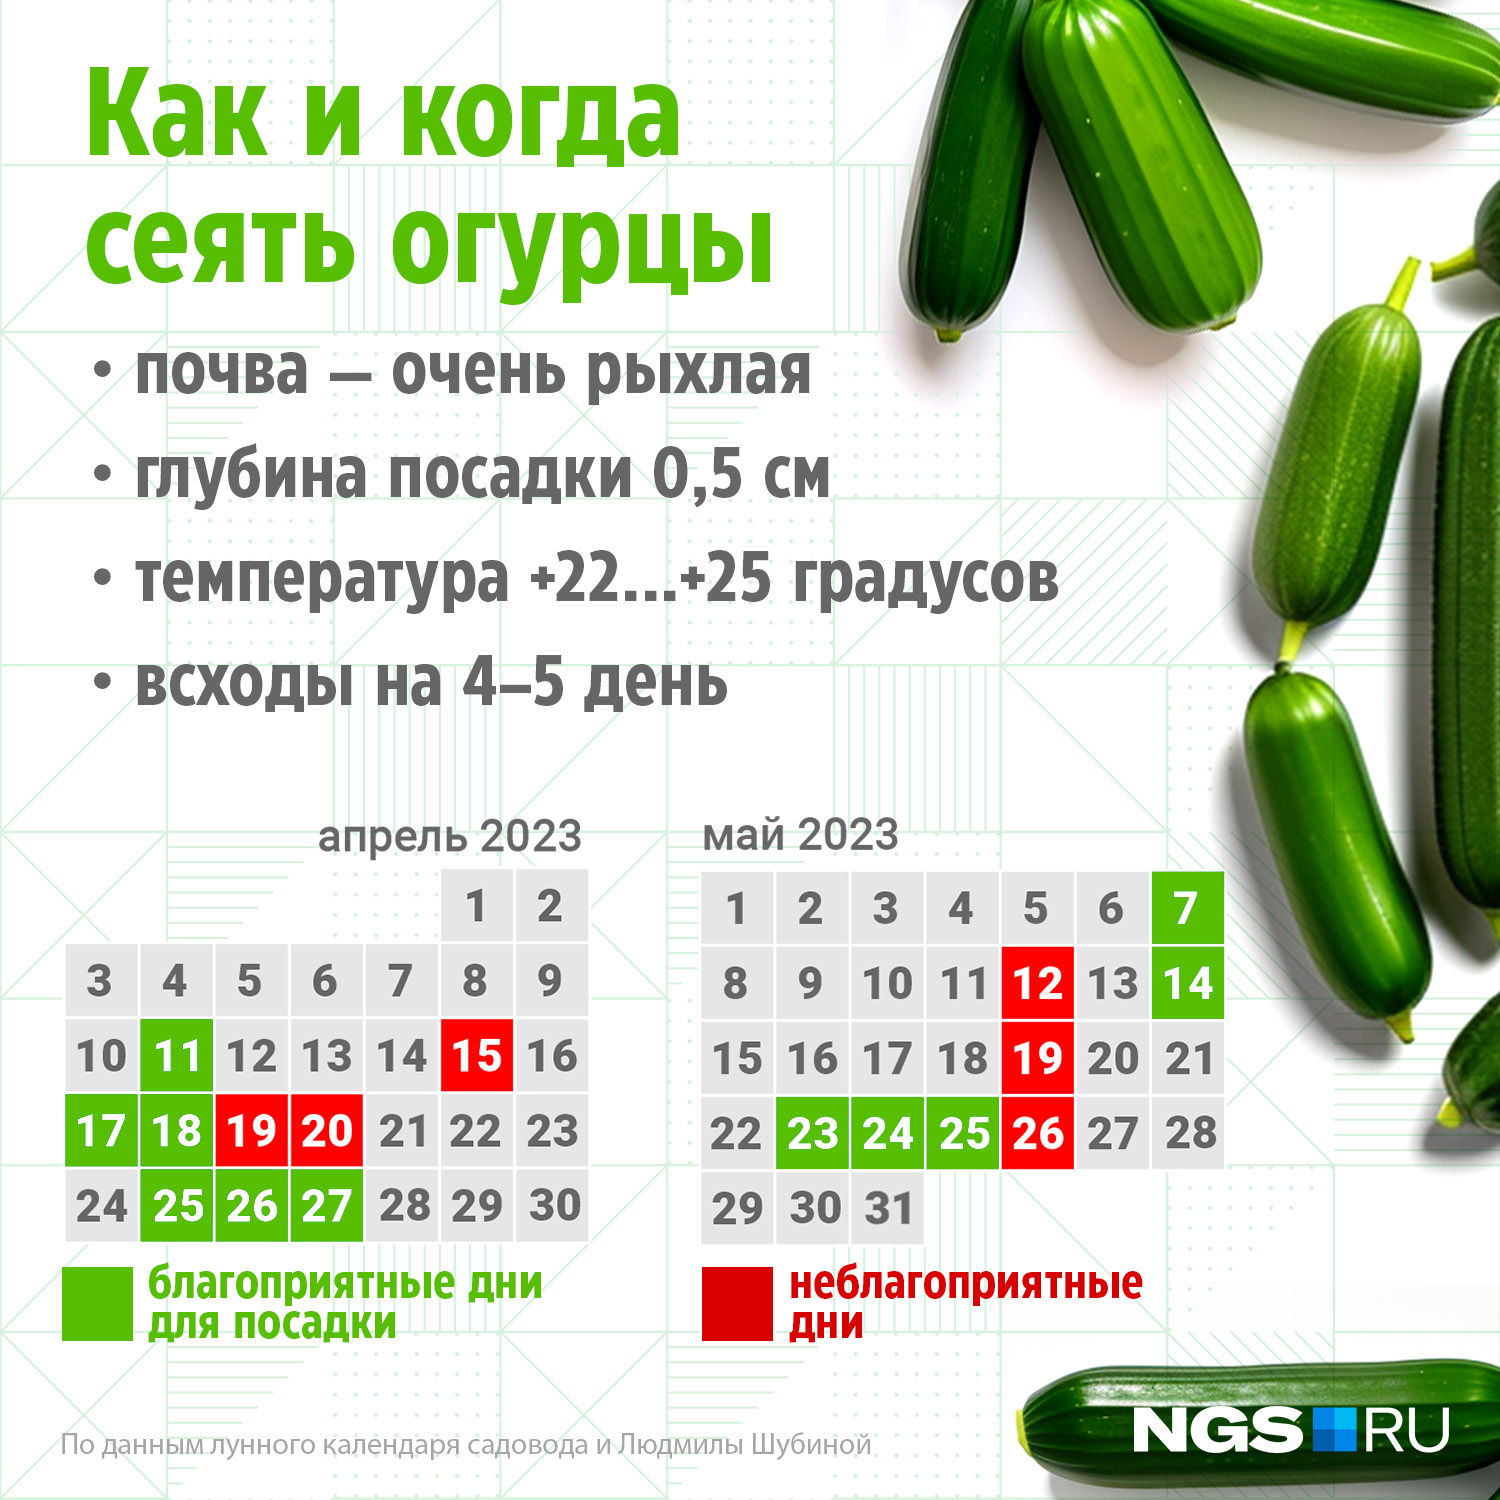 Когда сажать огурцы на рассаду: сорта огурцов для теплицы самоопыляемые,какие не горчат - 9 апреля 2023 - chita.ru